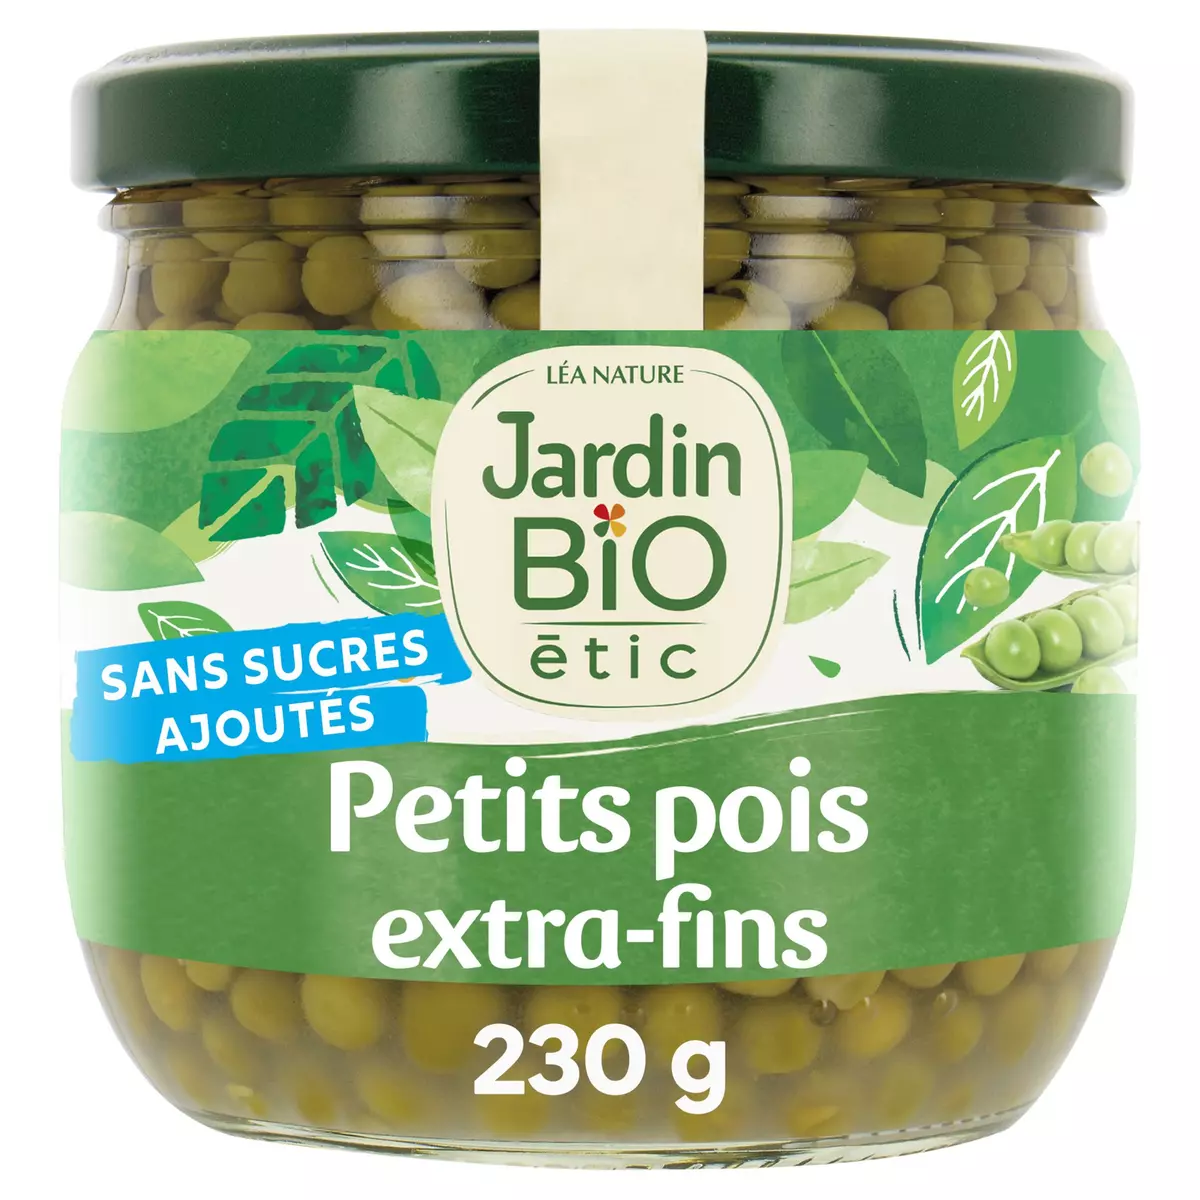 JARDIN BIO ETIC Petits pois extra-fins sans sucres ajoutés en bocal 230g